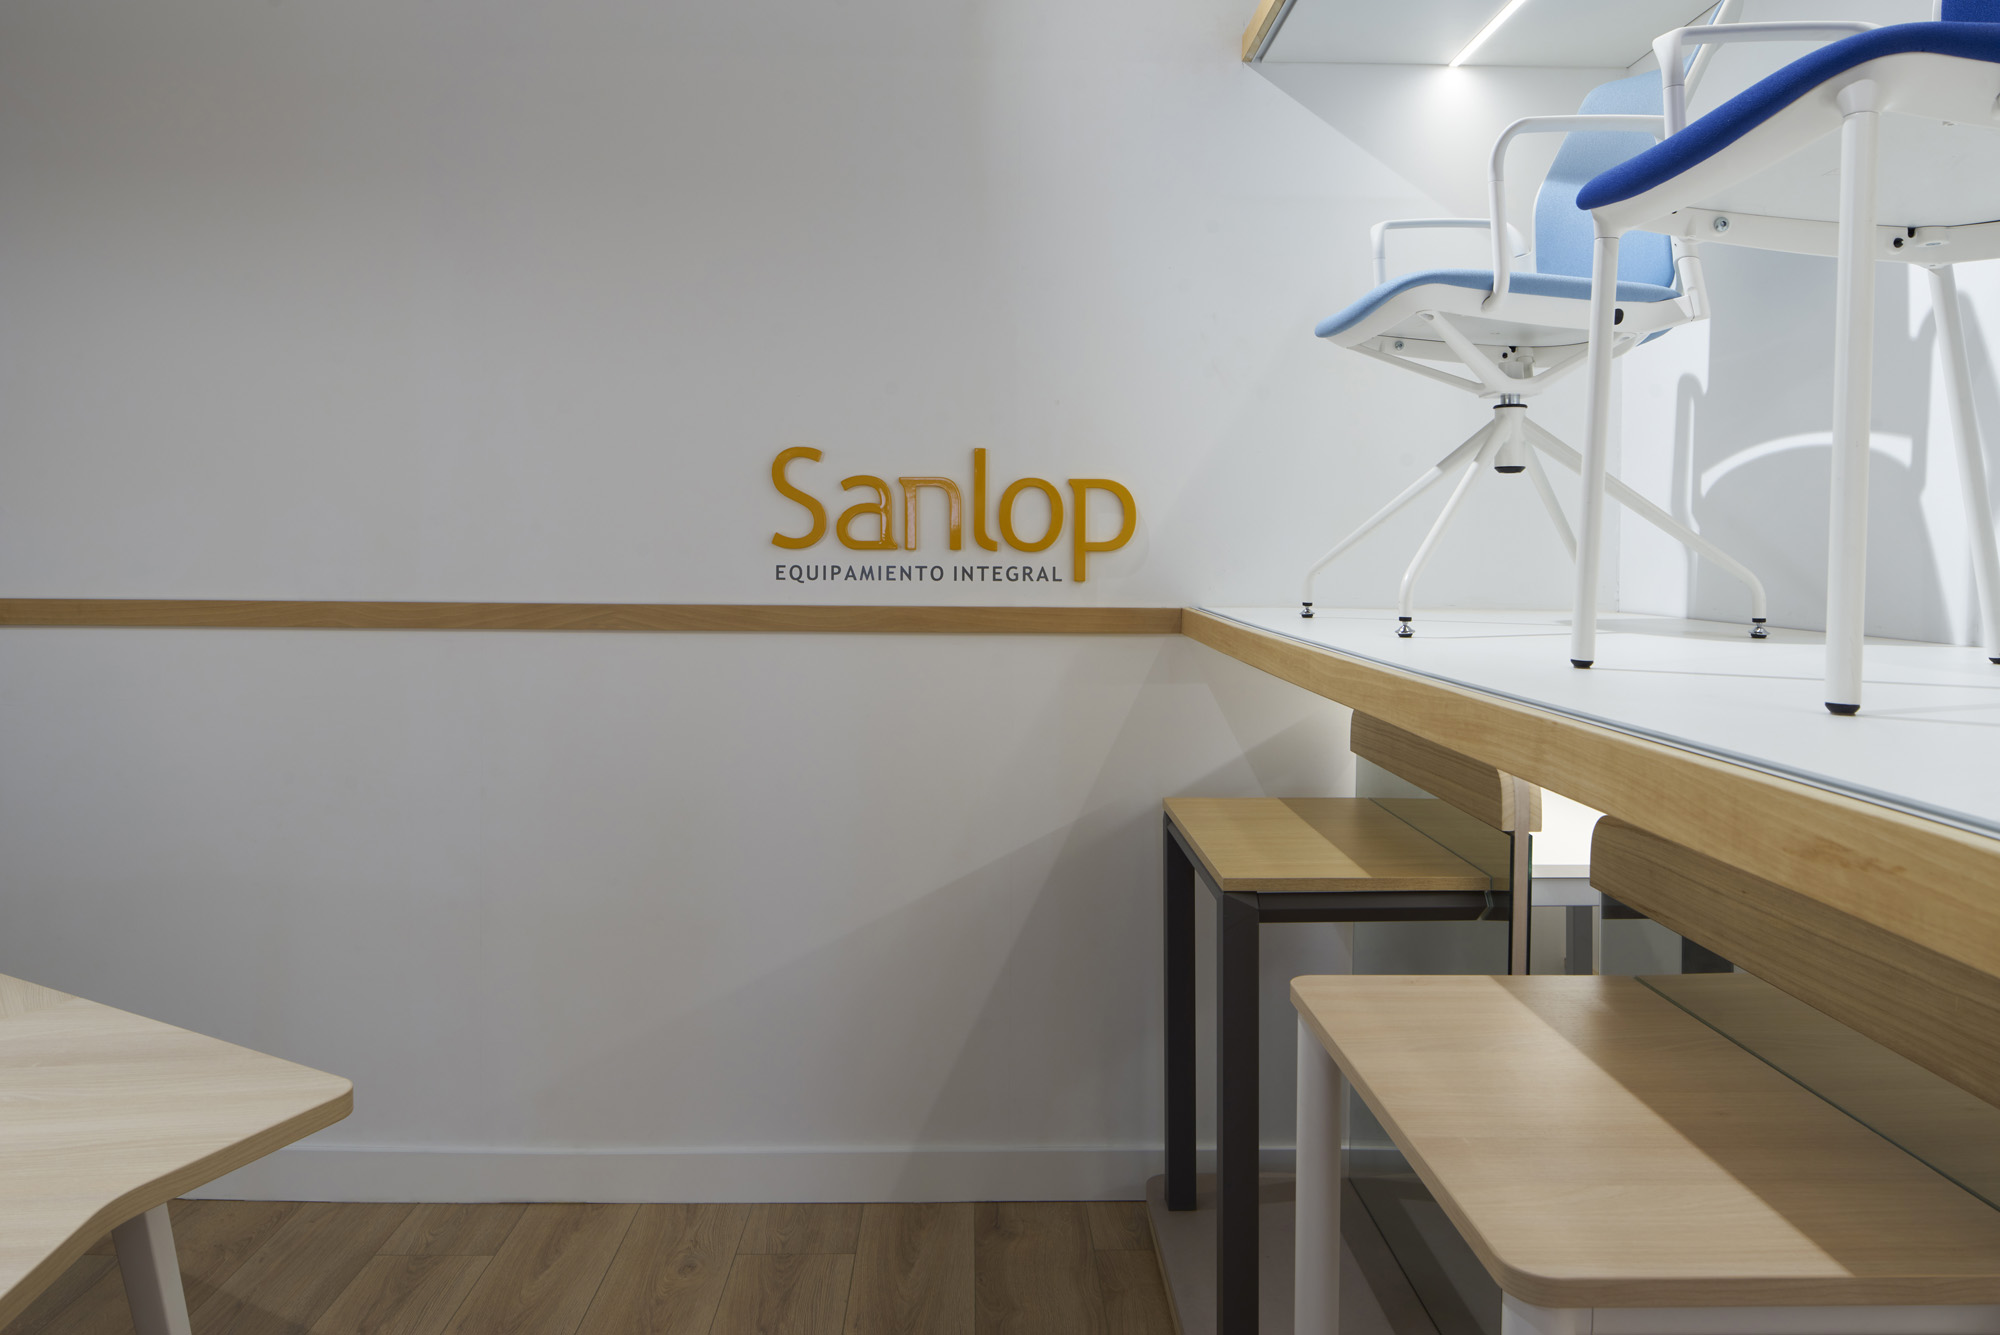 Proyecto de interiorismo para el Showroom Sanlop